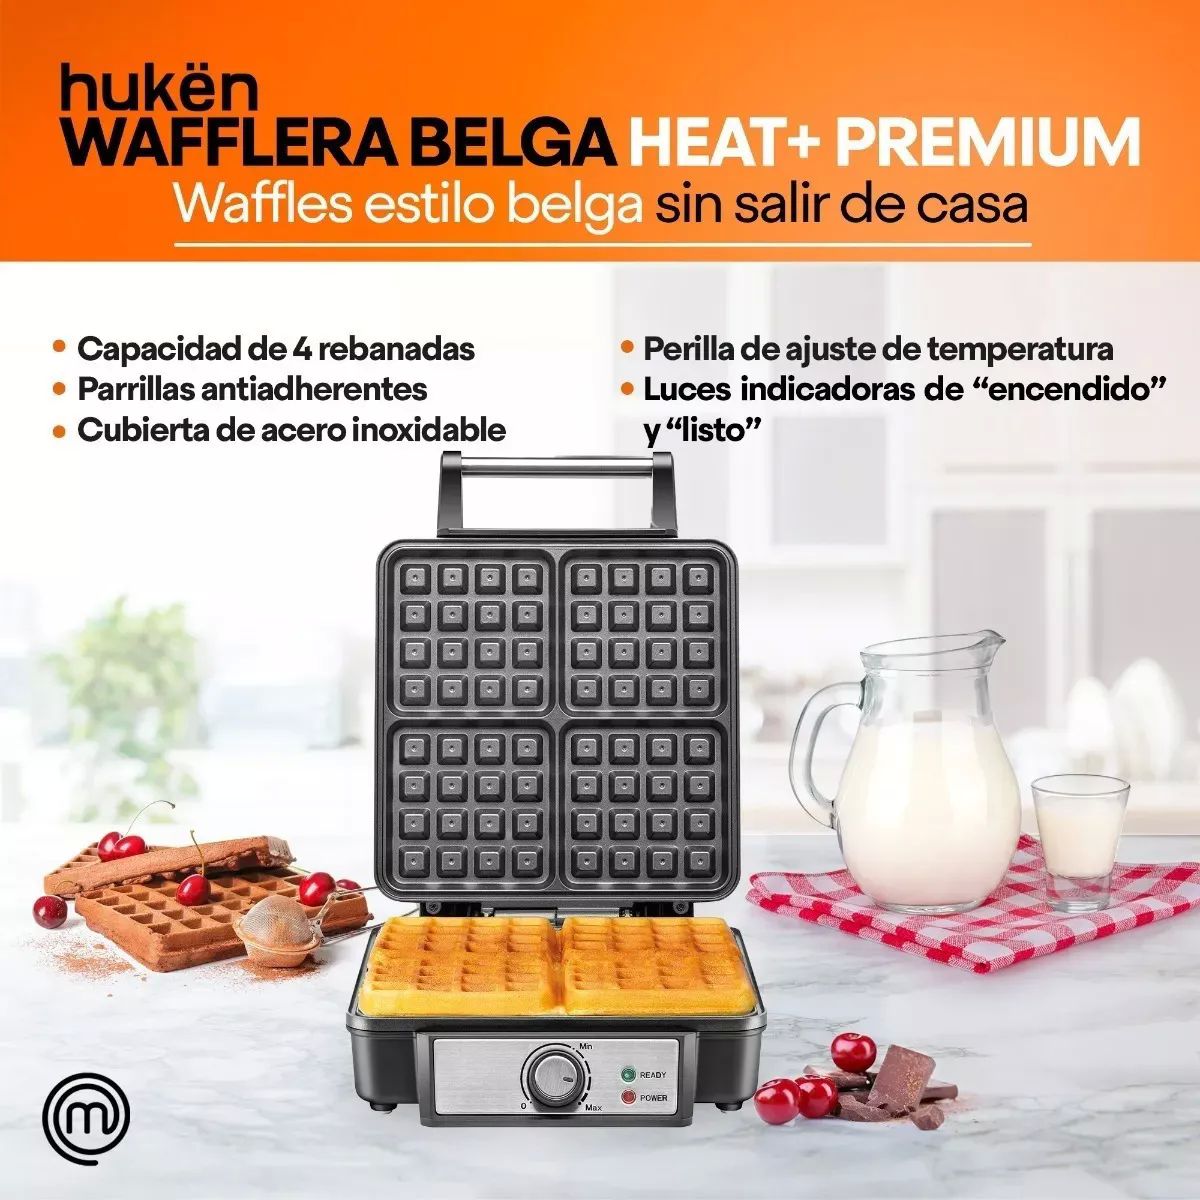 Wafflera Belga Heat+ Premium 4 Rebanadas Acero Masterchef 4.7 Calificación 4.5 de 5 (224)